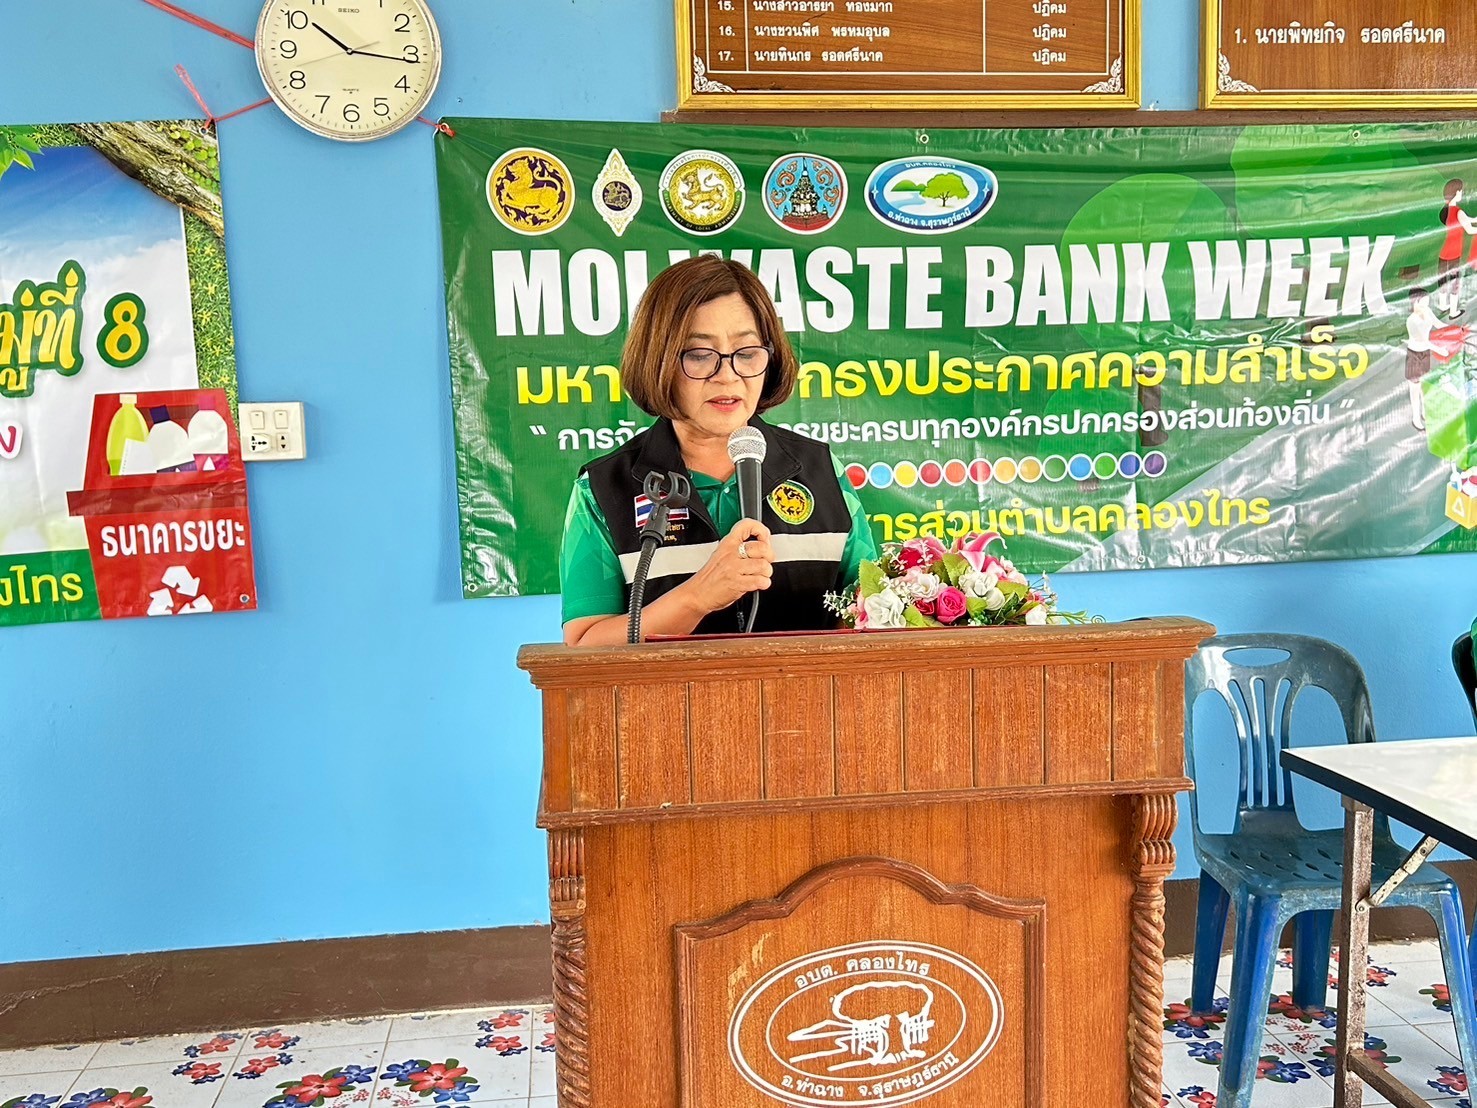 ประชาสัมพันธ์การจัดงานการจัด MOI Waste Bank Week - มหาดไทยปักธงประกาศความสำเร็จ 1 องค์กรปกครองส่วนท้องถิ่น 1 ธนาคารขยะ